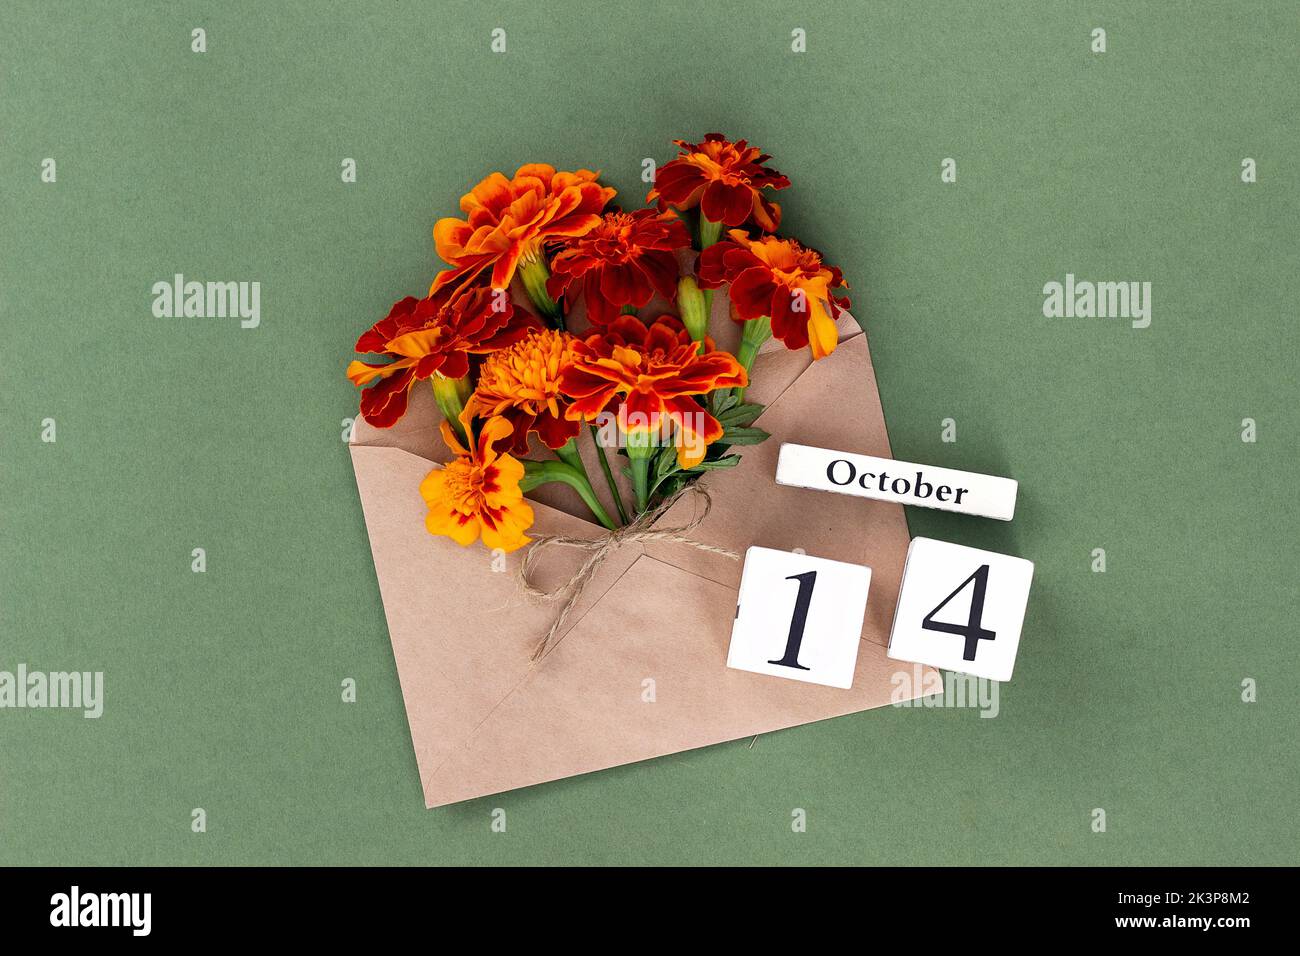 14 octobre. Bouquet de fleurs orange en enveloppe artisanale et date calendrier sur fond vert. Concept minimal Hello Fall. Modèle pour votre conception, gr Banque D'Images